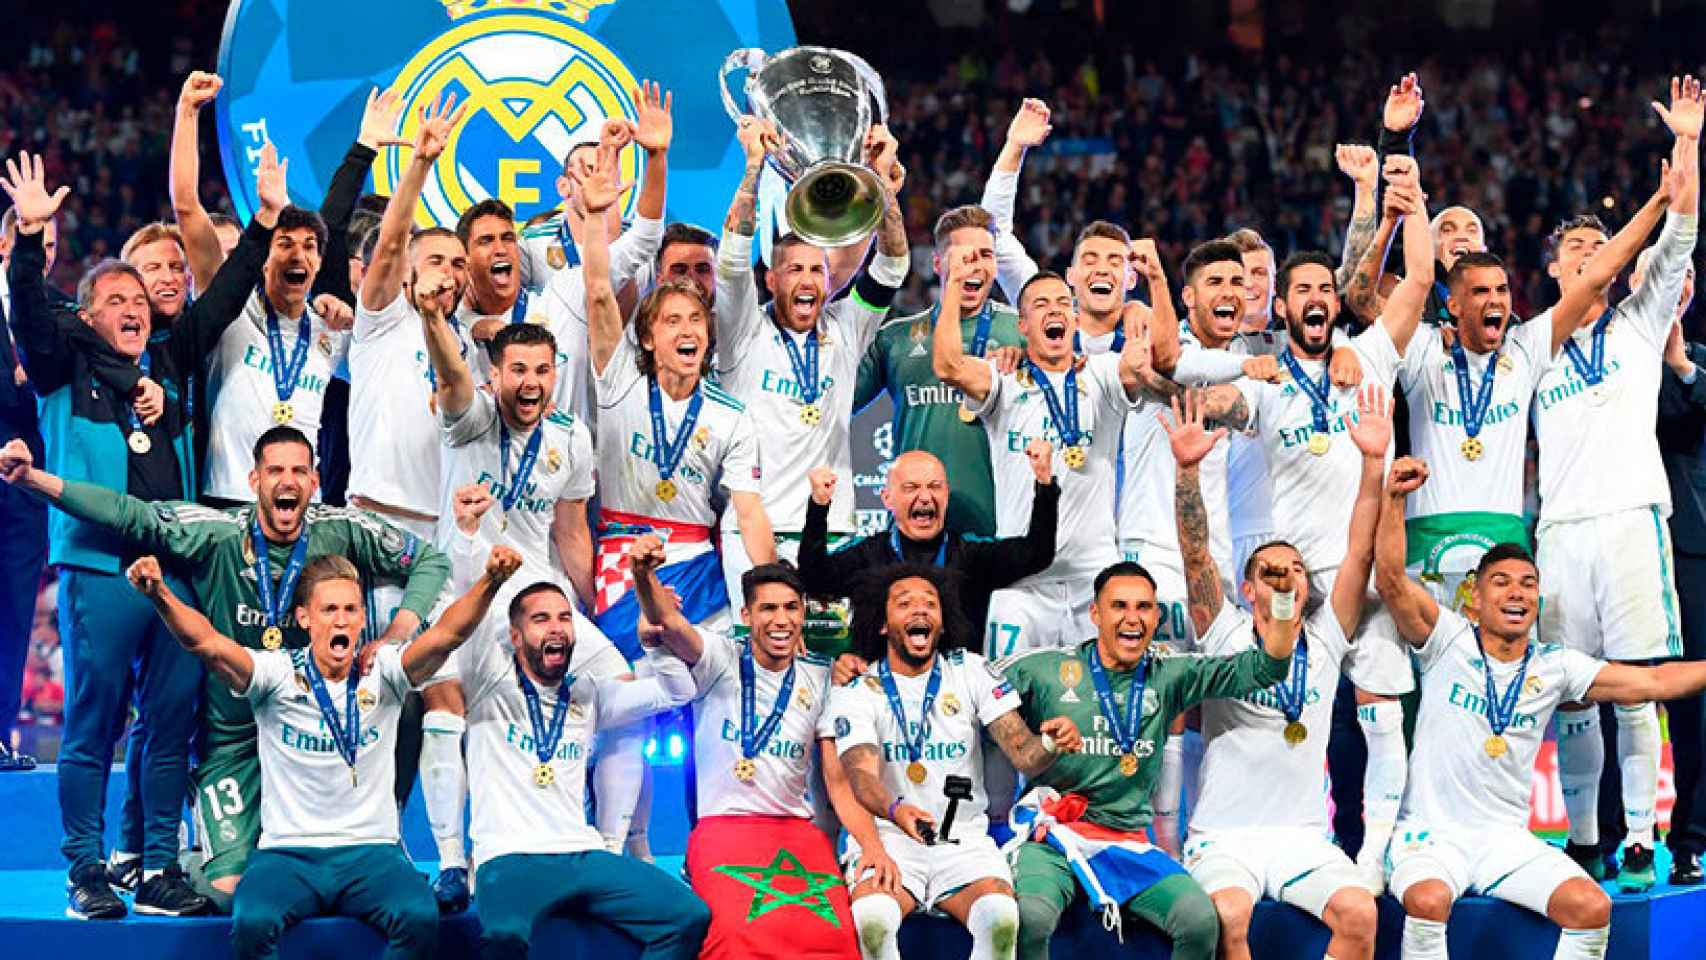 El Real Madrid levanta la Champions League